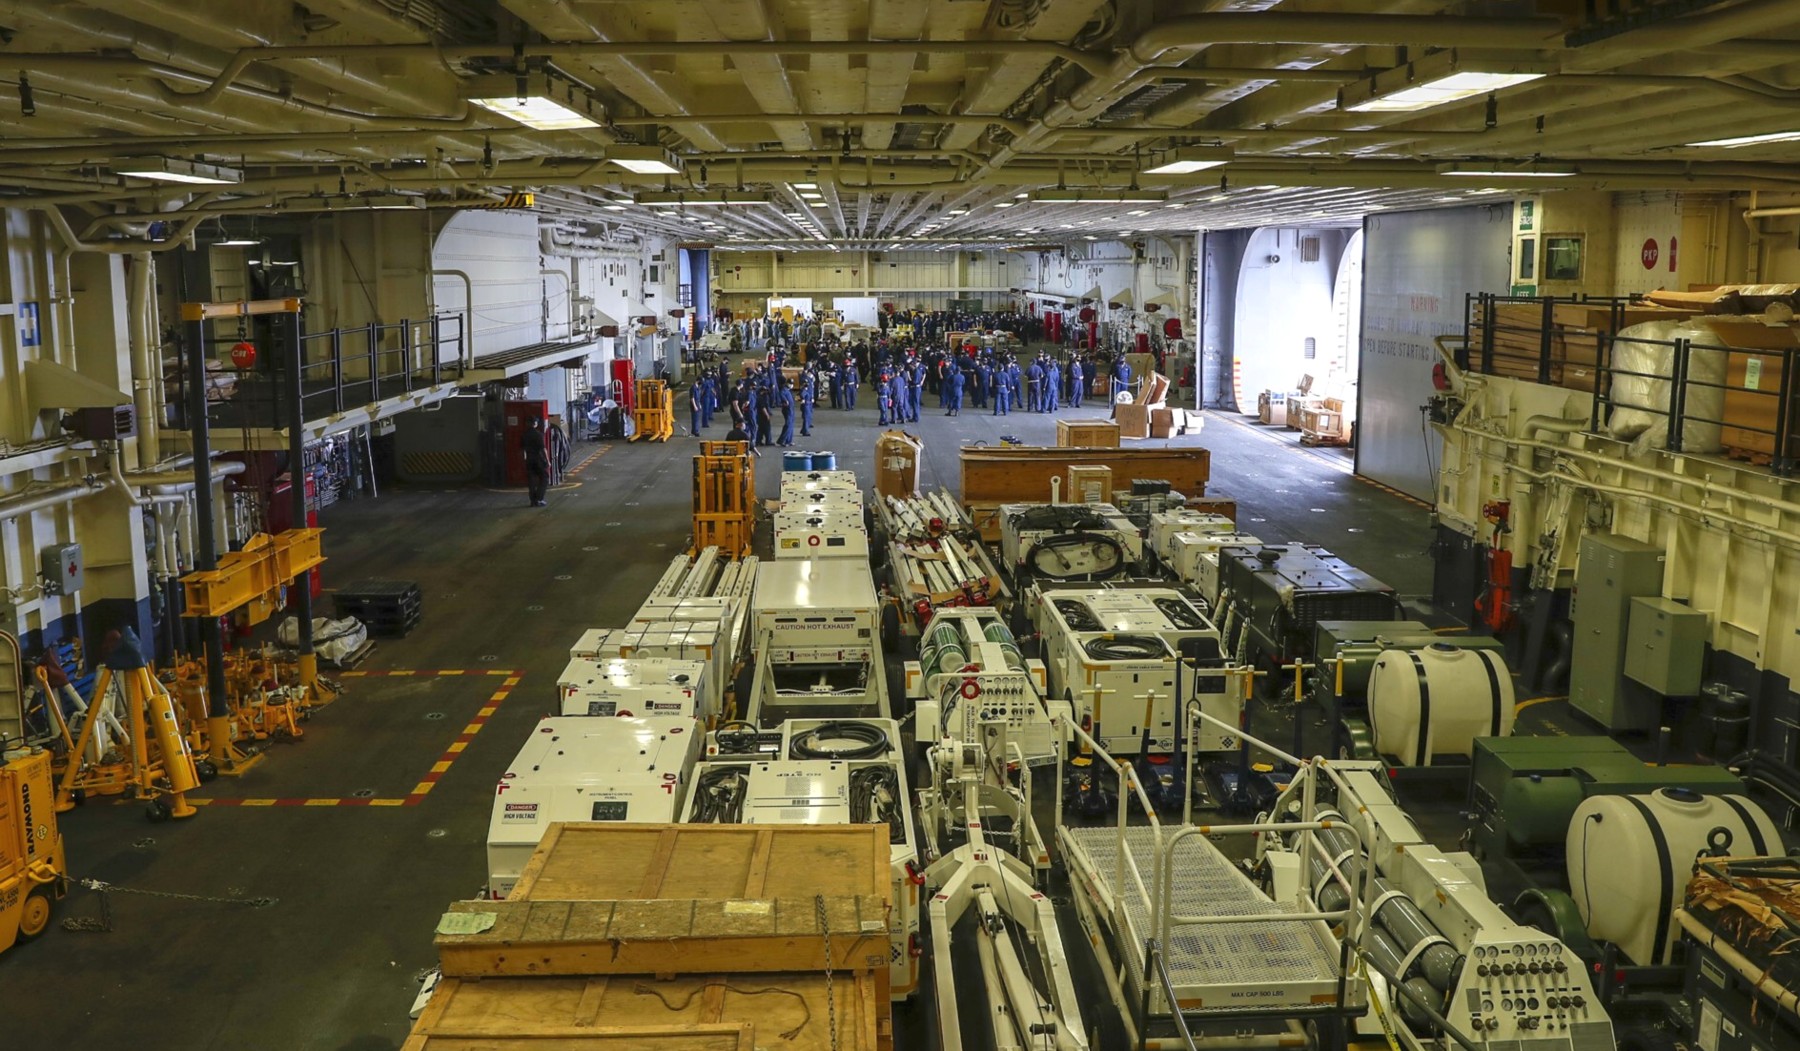 lha-7 uss tripoli america class amphibious assault ship us navy 14 hangar bay deck